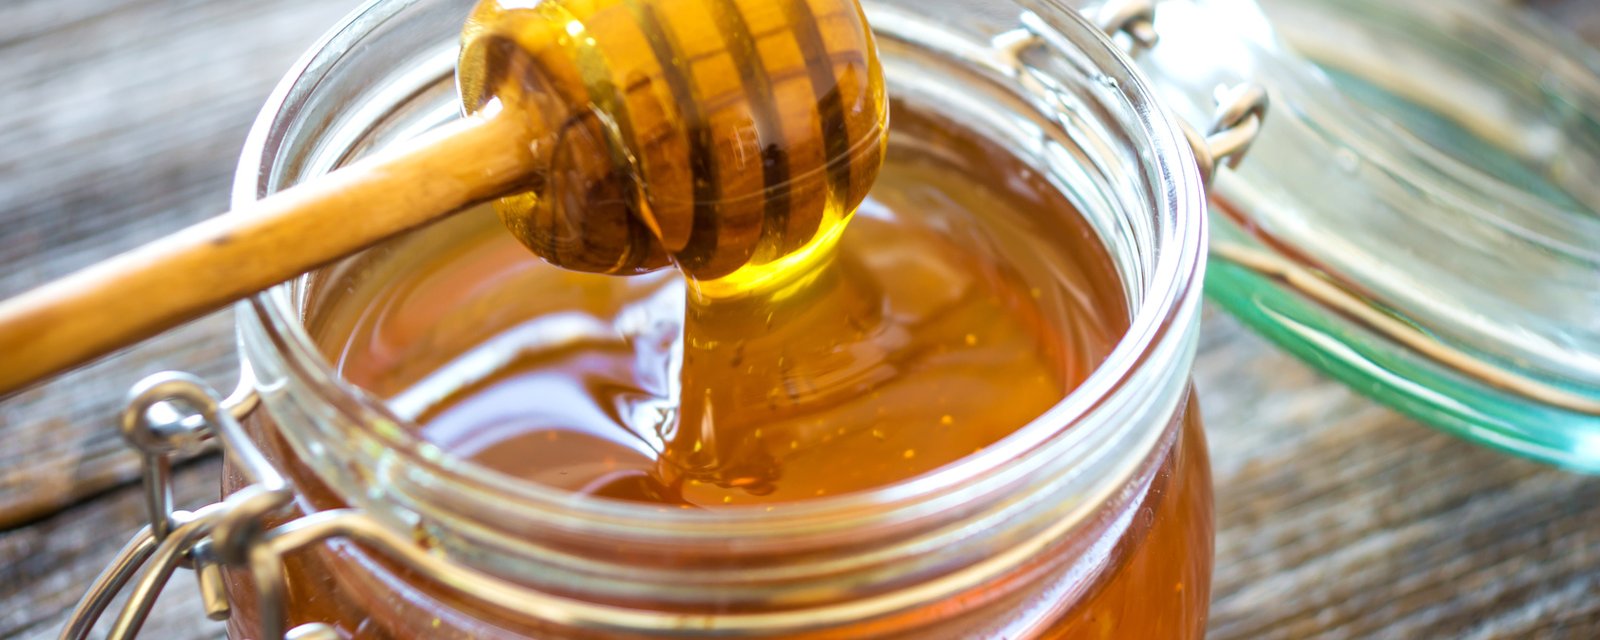 8 avantages à consommer régulièrement du miel!